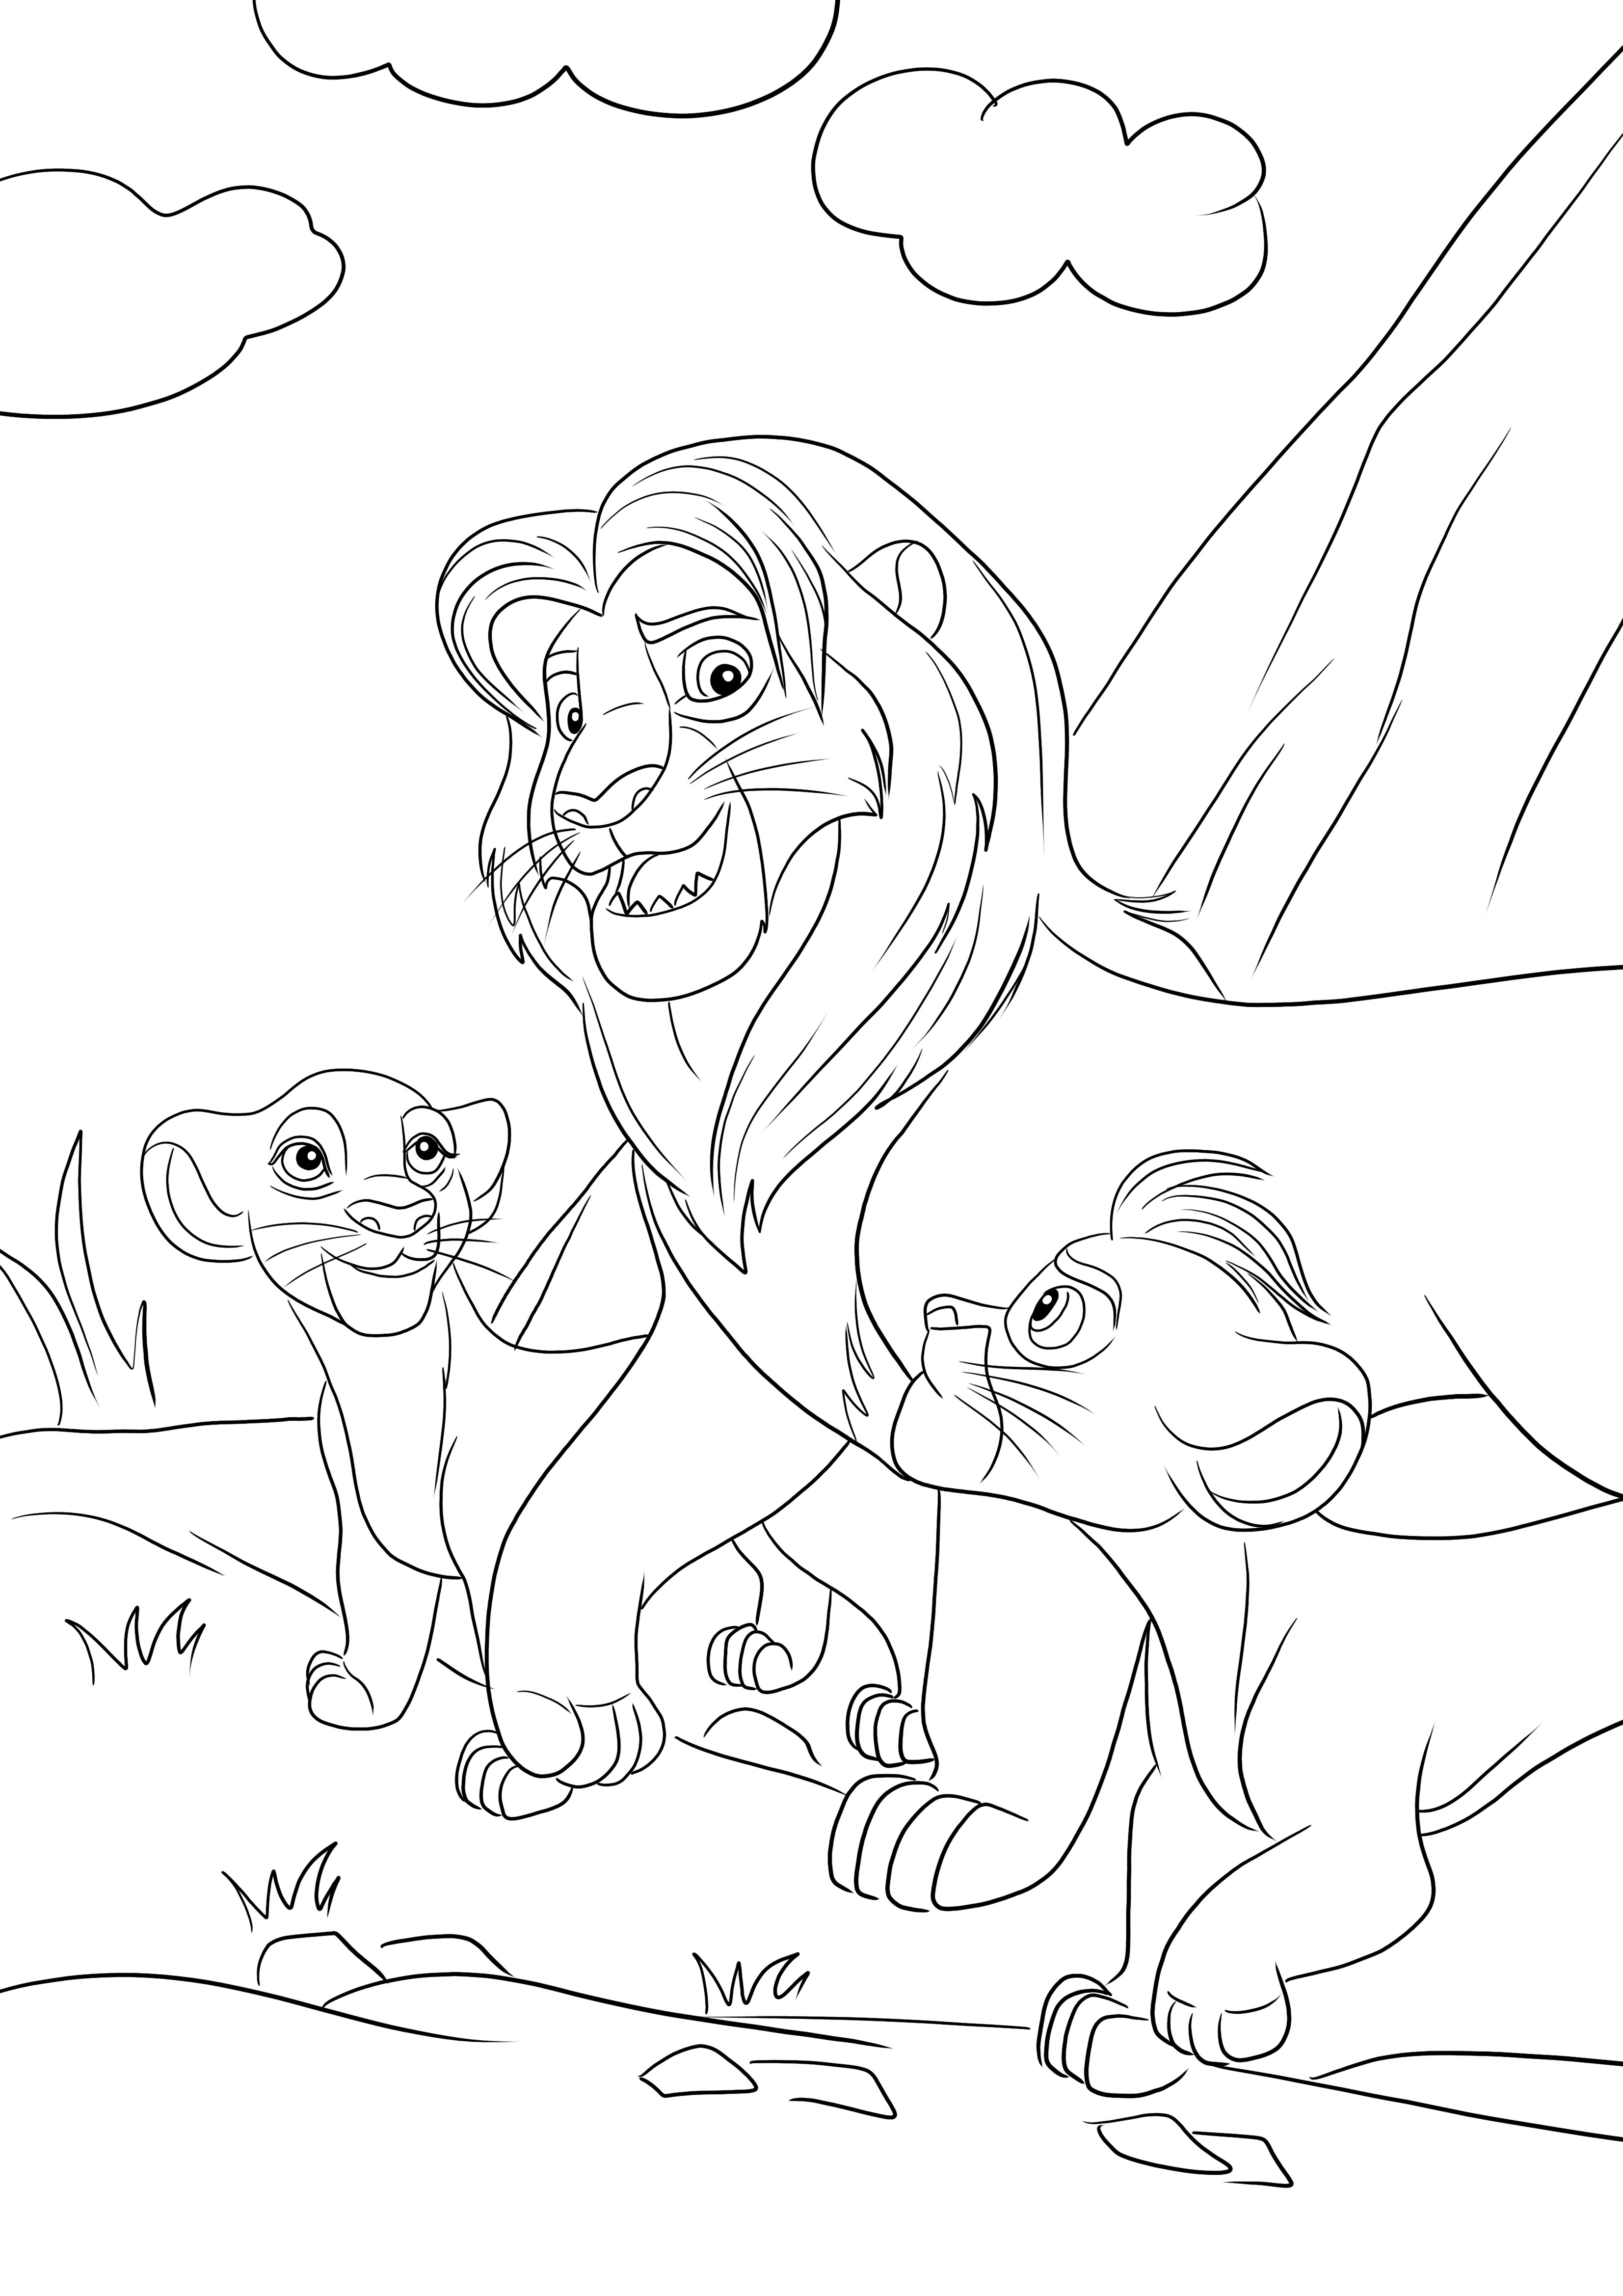 İndirmek ve renklendirmek için Simba ve iki oğlu Kiara ve Kion'un ücretsiz boyaması